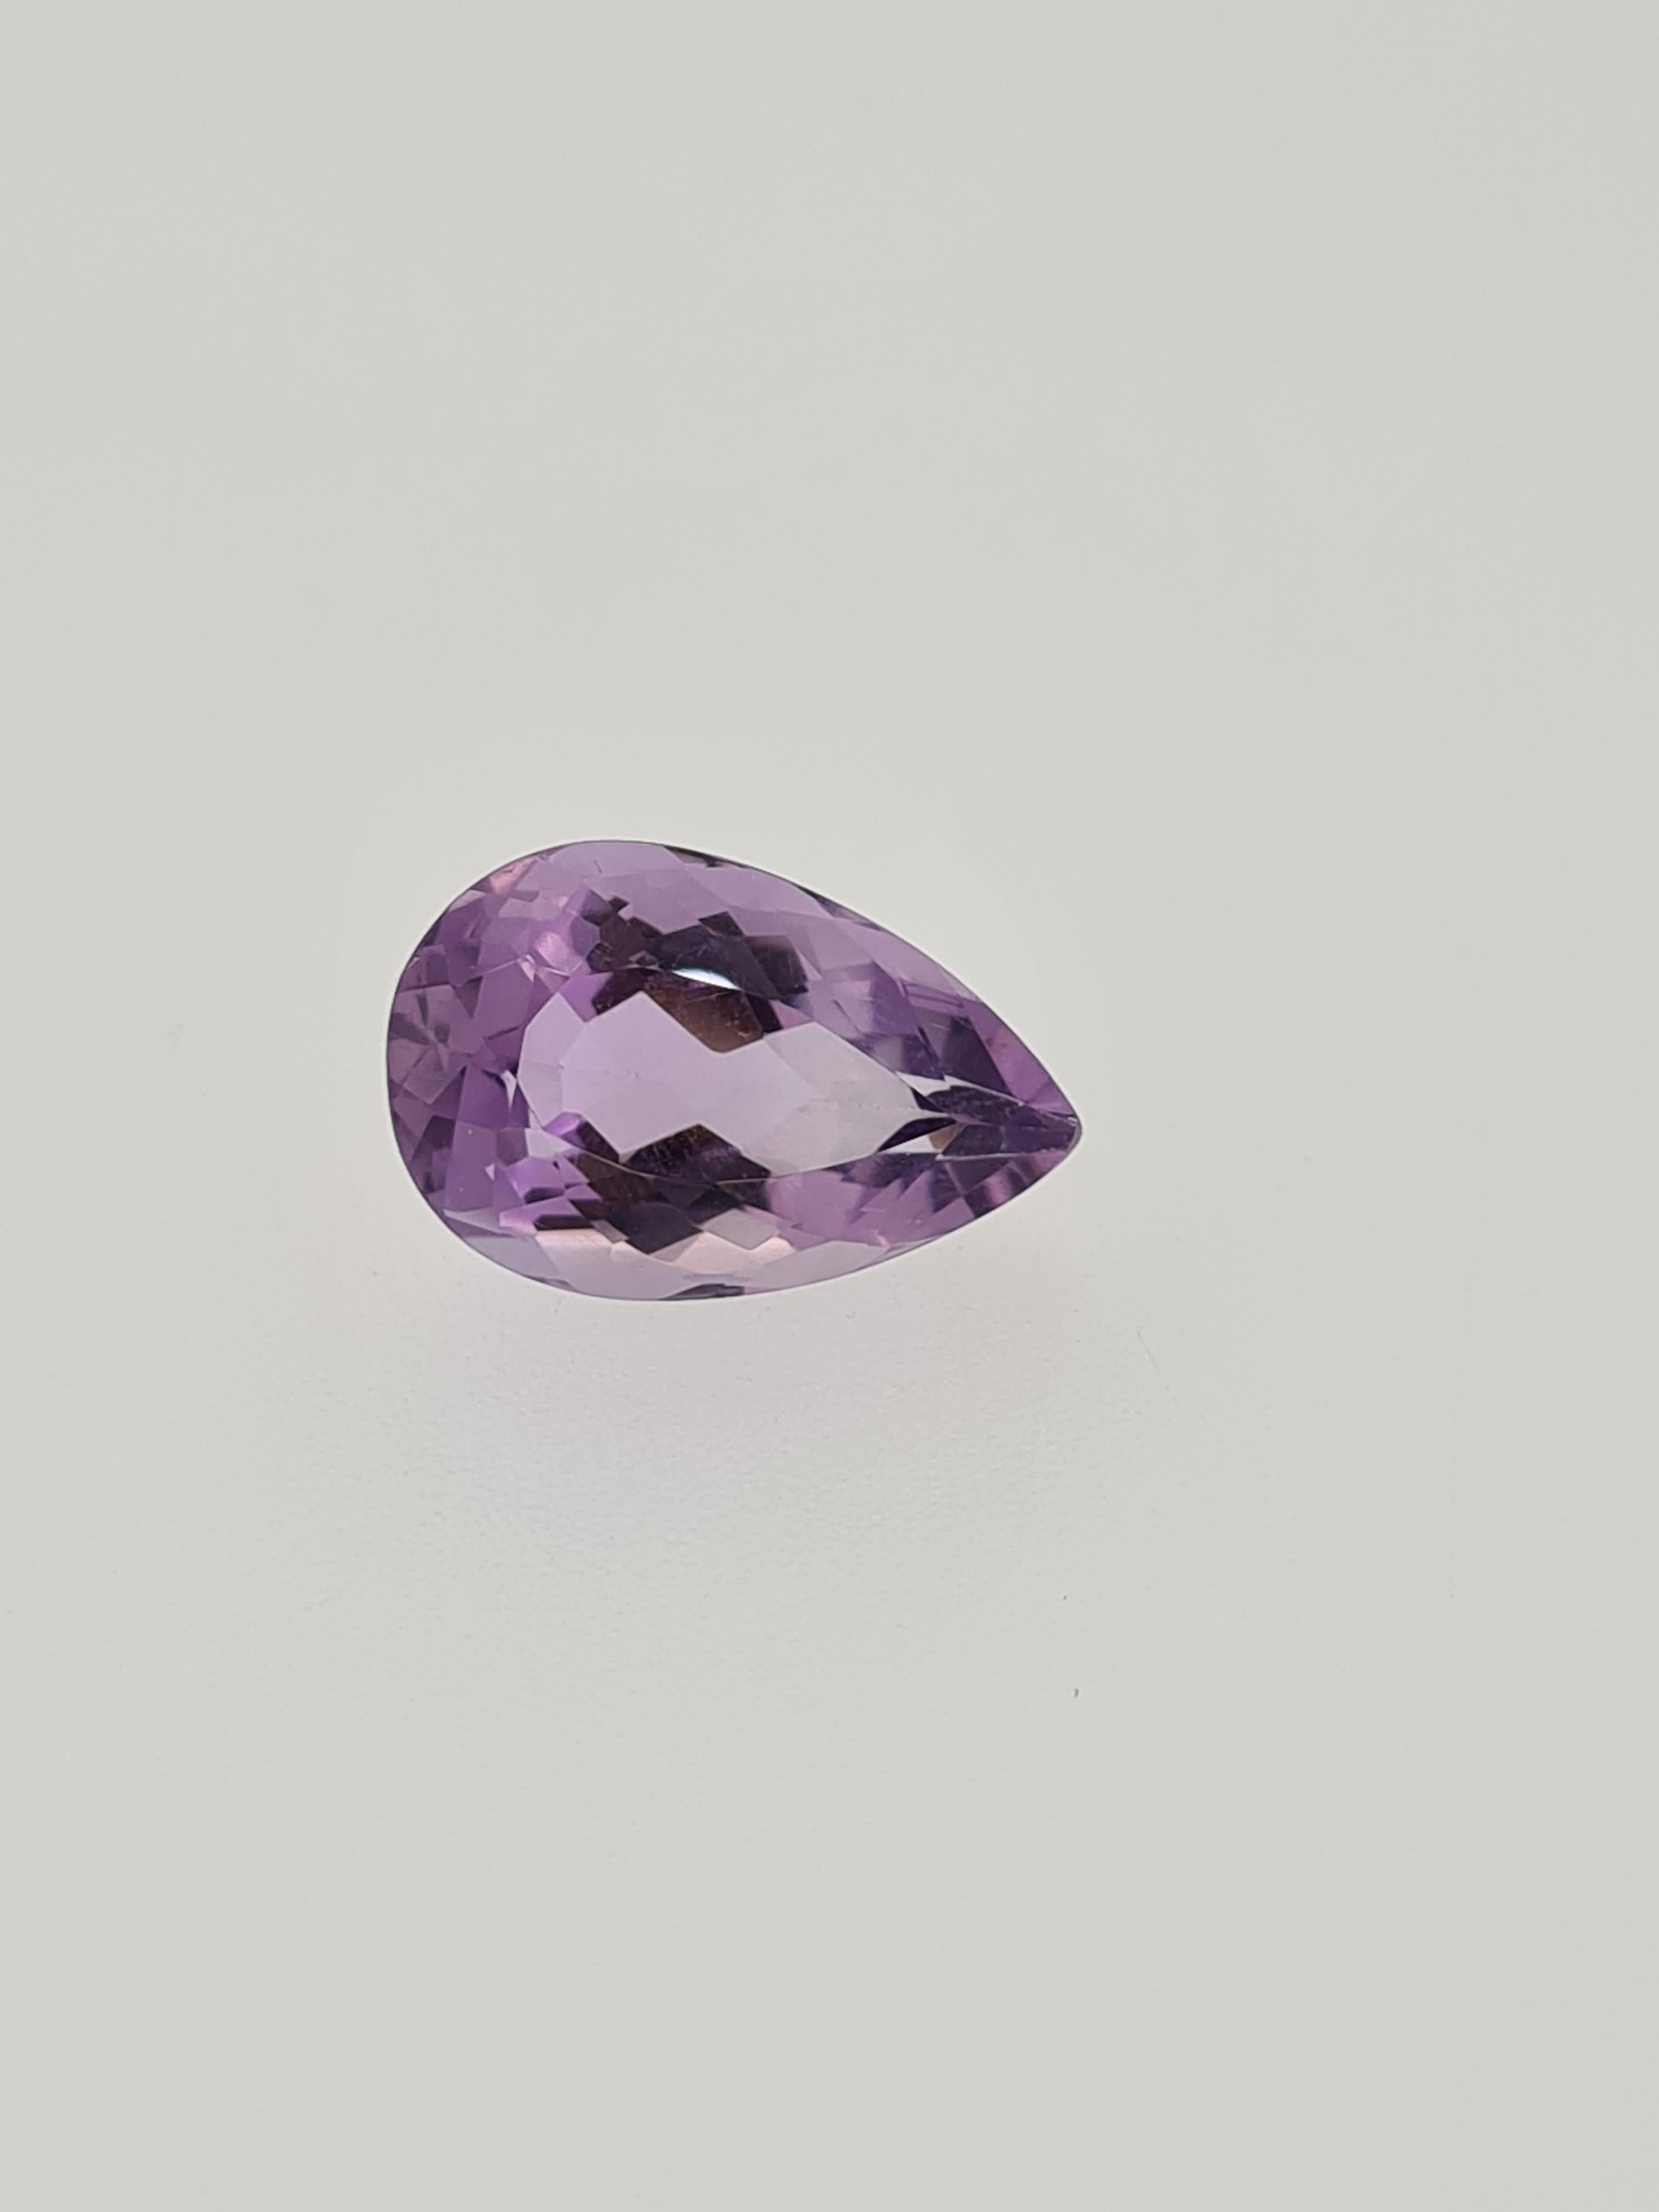 Amethyst pear cut gem stone - Image 3 of 4